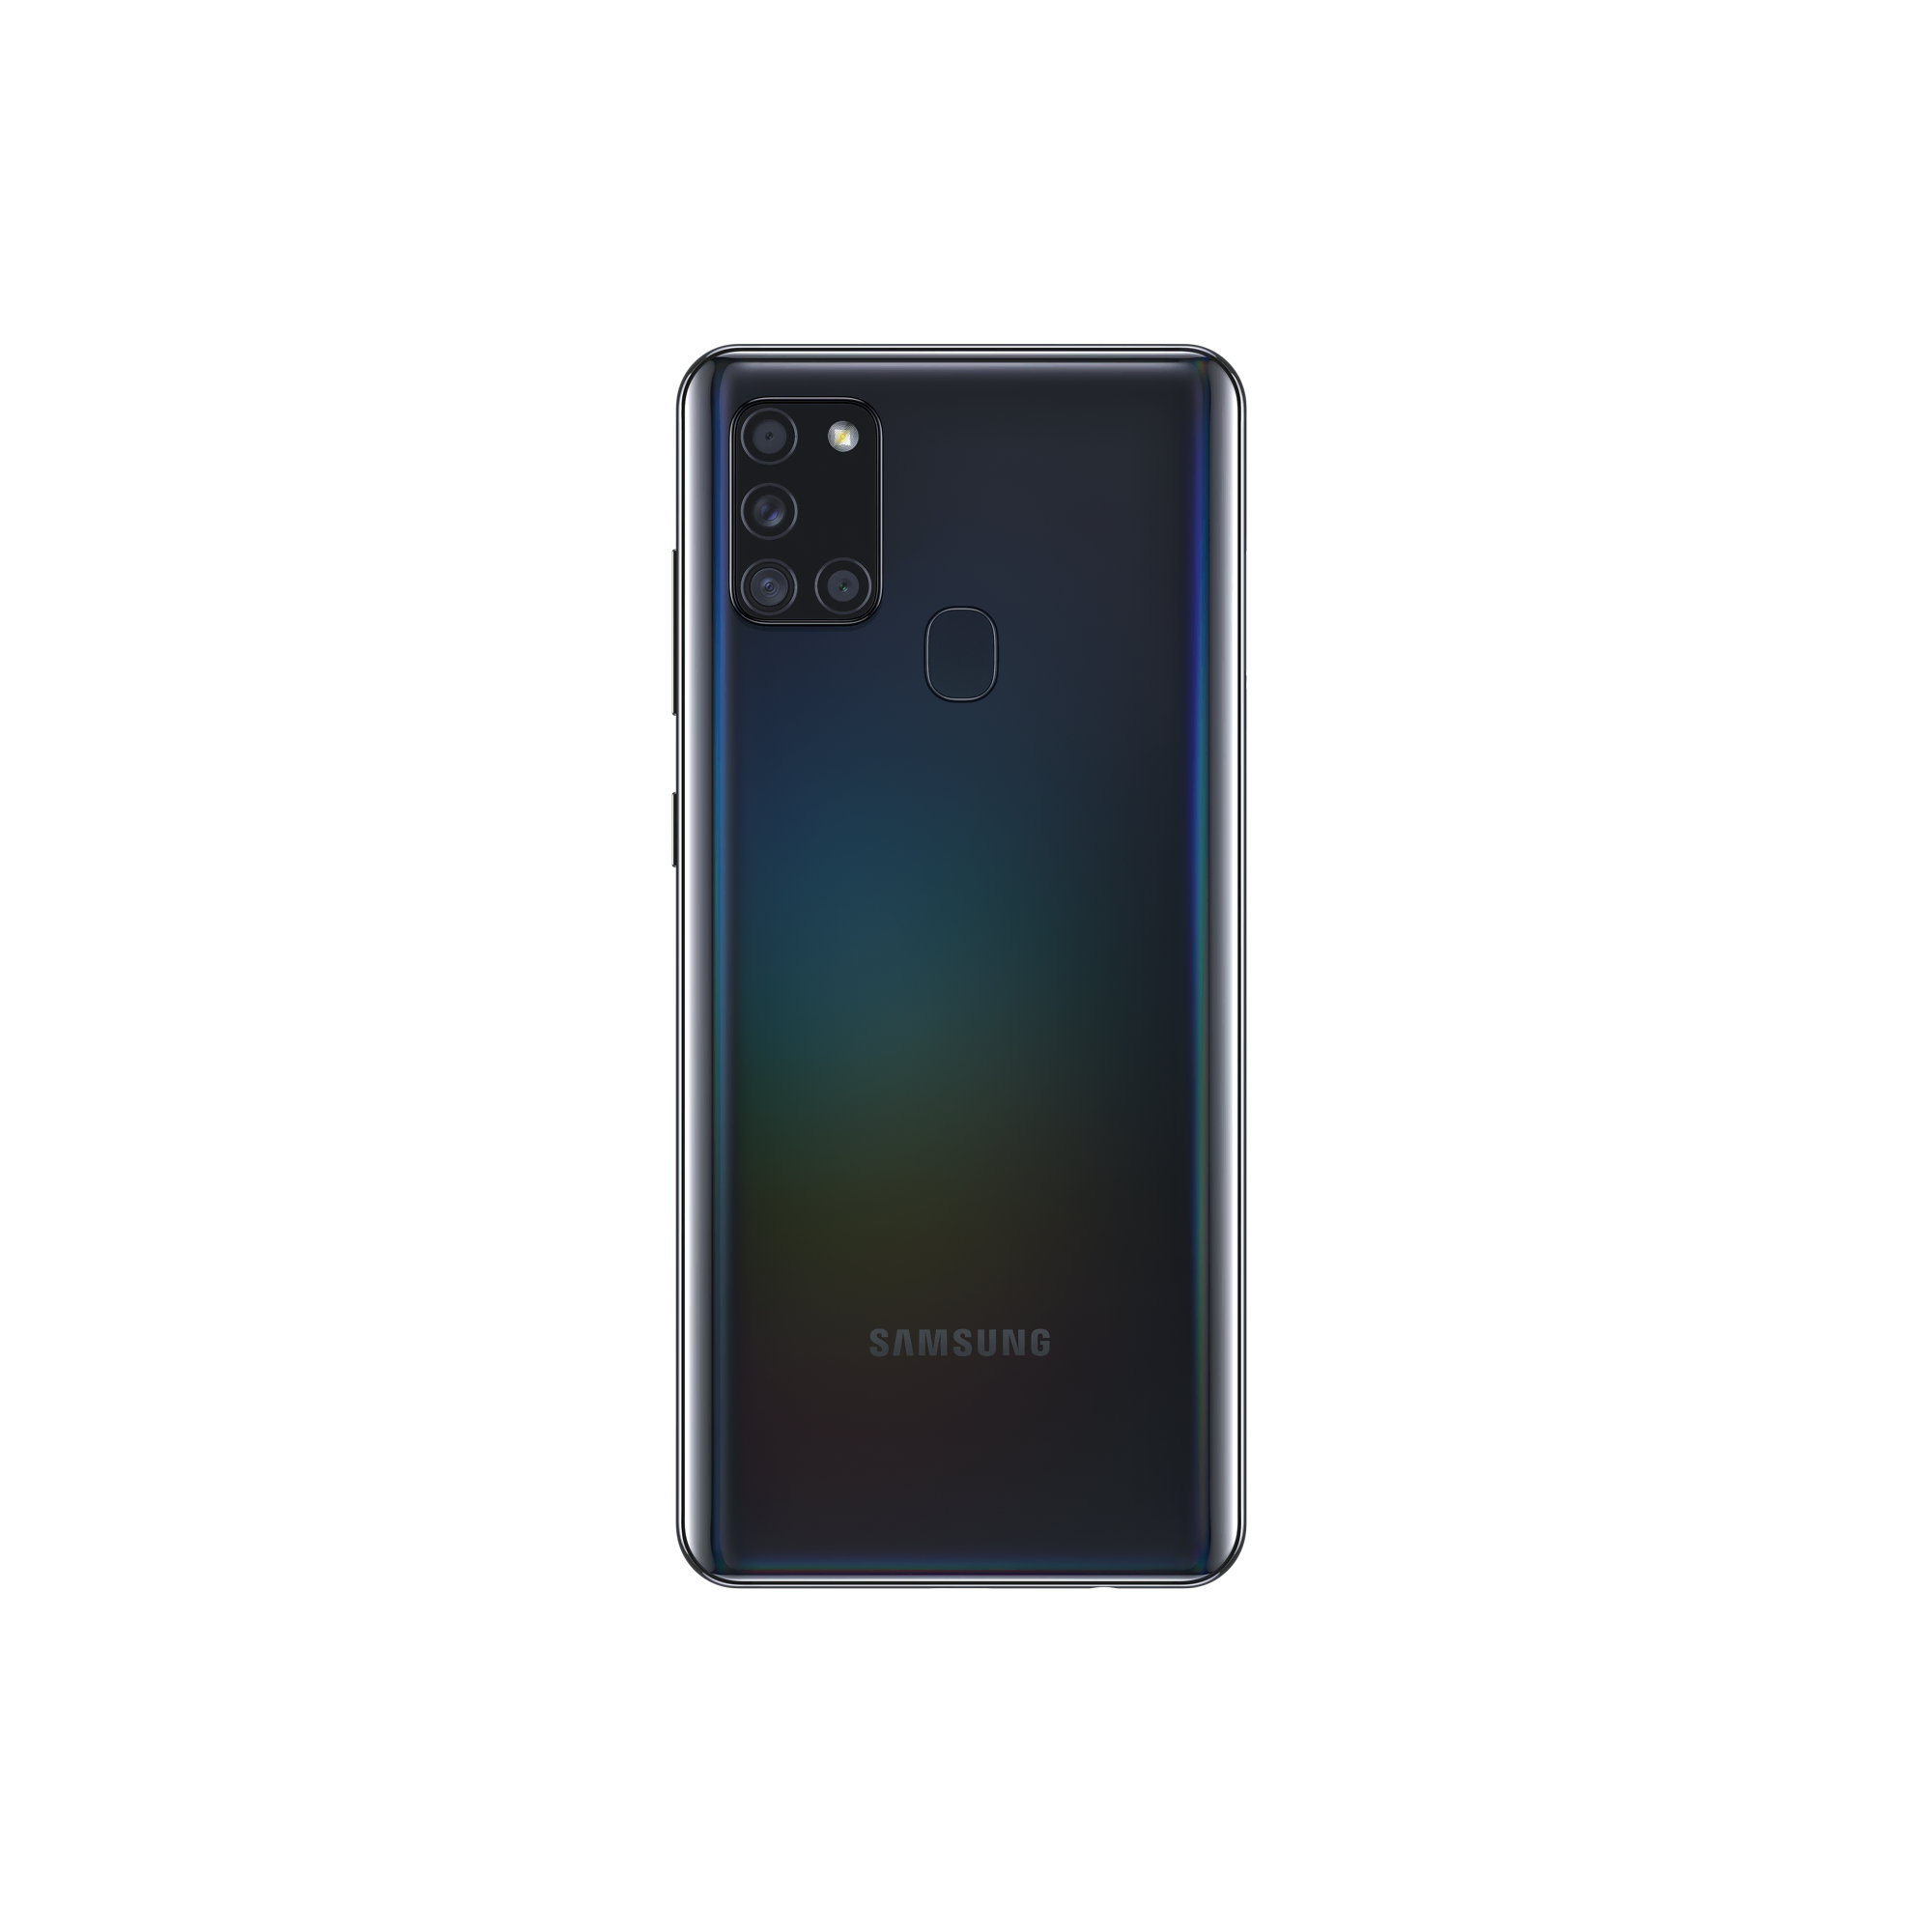 Samsung Galaxy A21s Siyah Android Telefon Modelleri